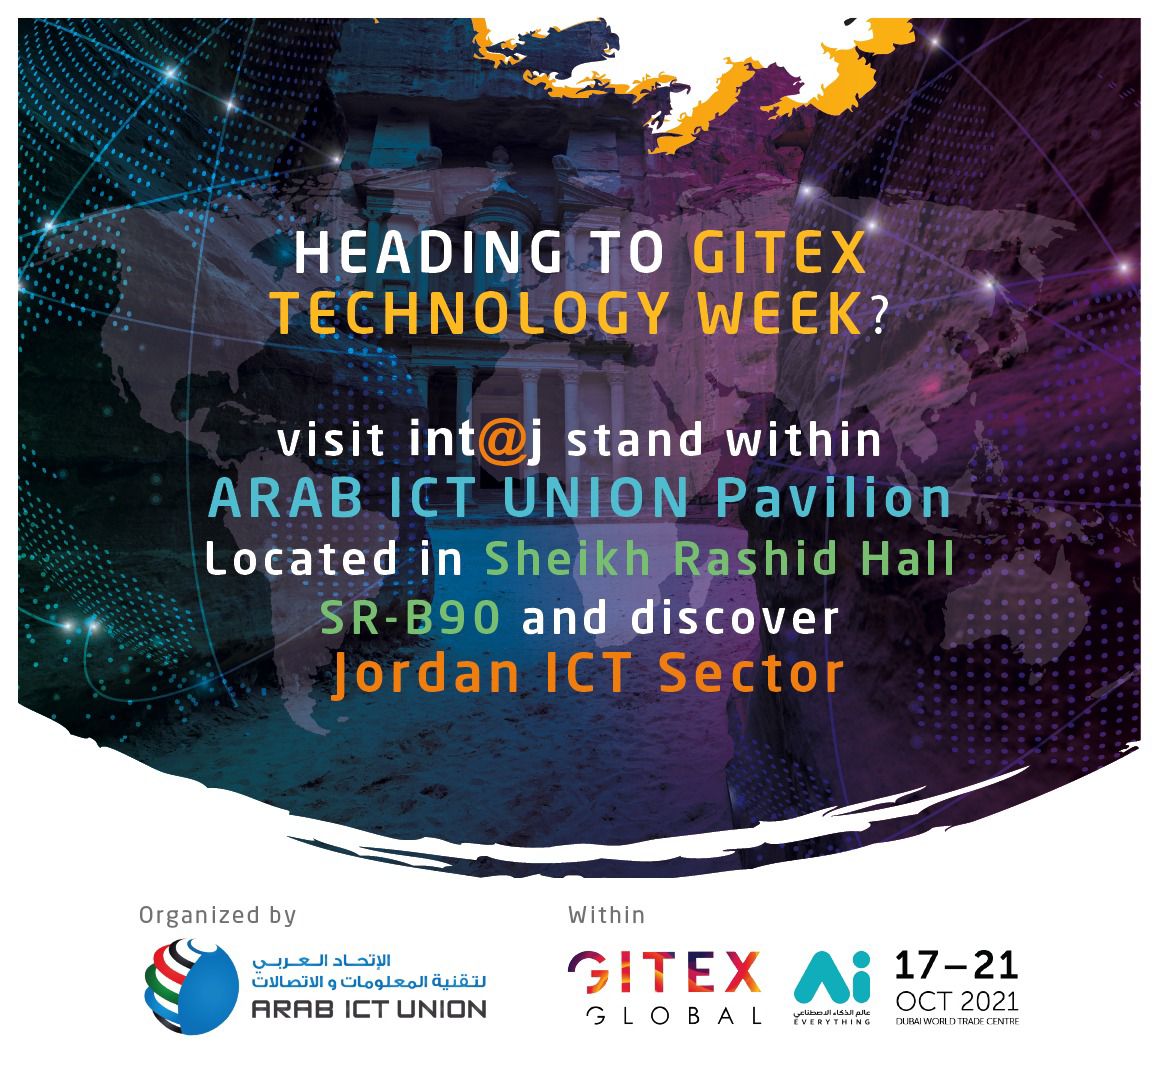 《انتاج》 تروج شركات التكنولوجيا الأردنية في معرض جيتكس للتكنولوجيا 2021 في دبي